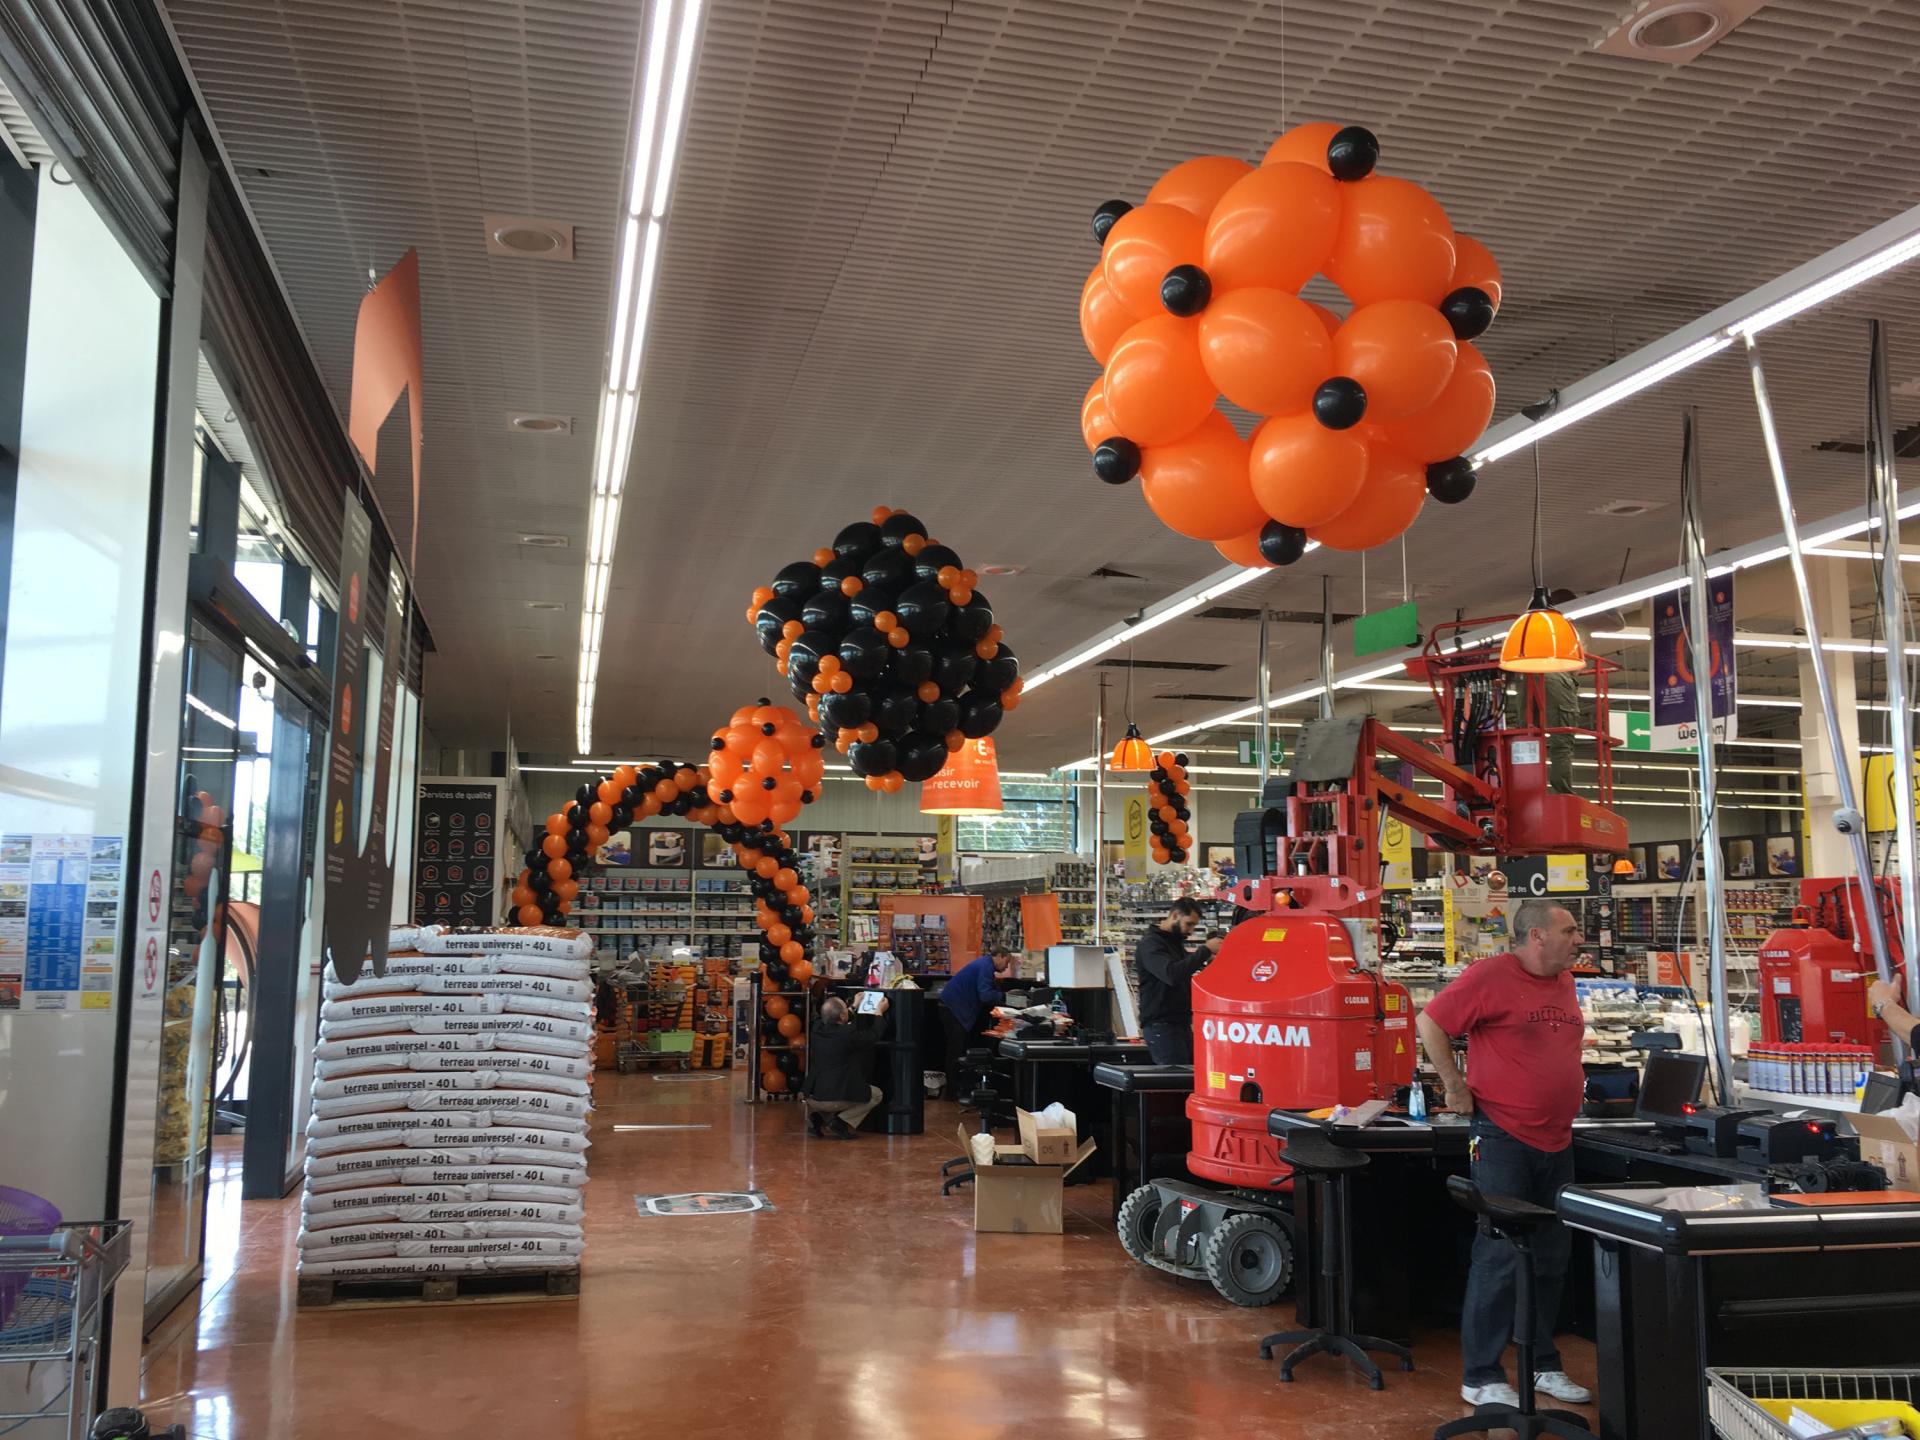 Arche ballon magasin